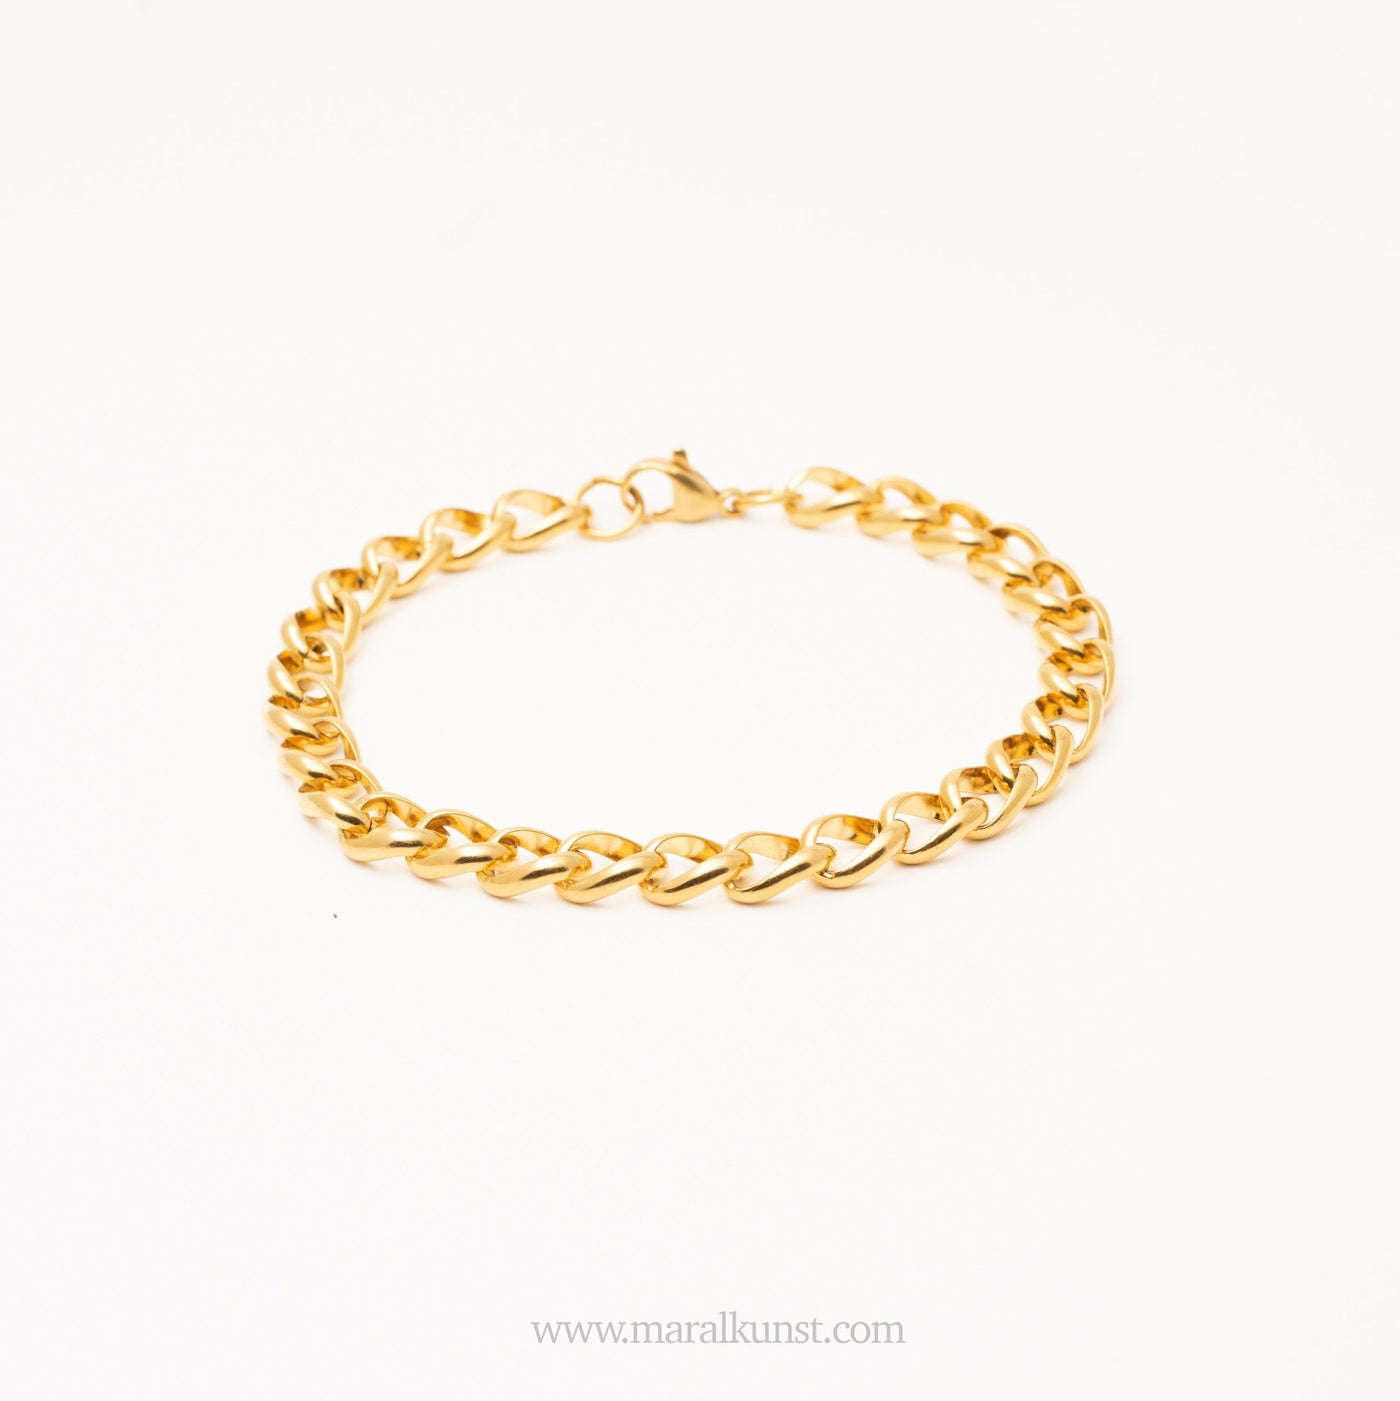 Cuban Chain Bracelet - Maral Kunst Jewelry